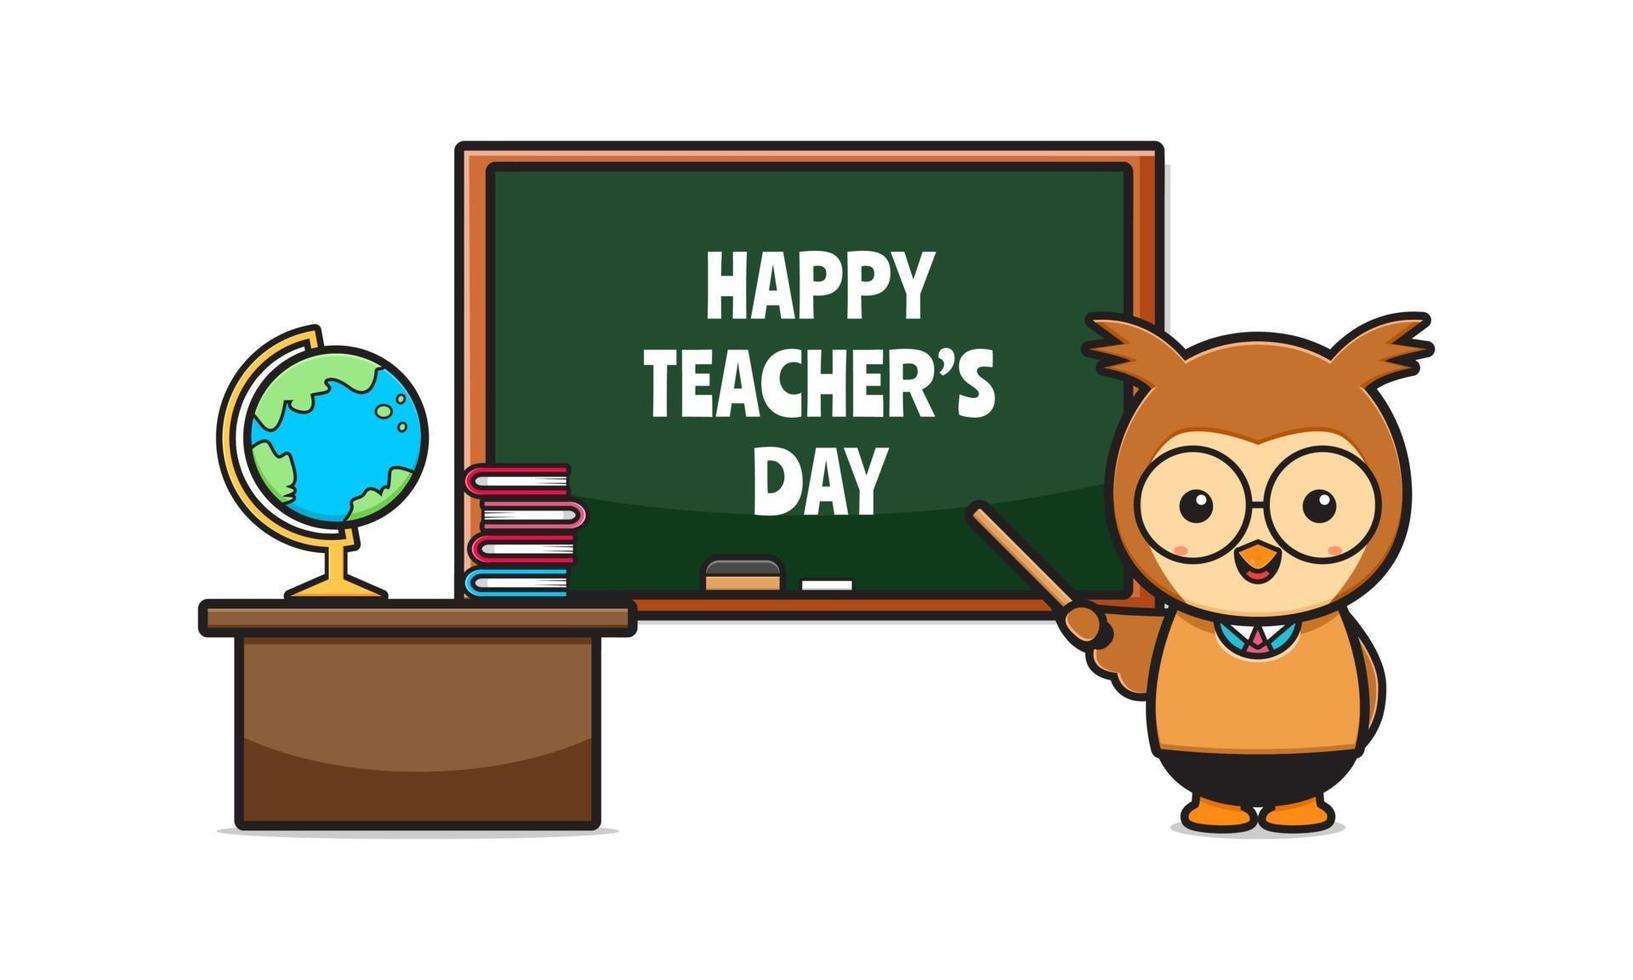 hibou mignon célèbre l'illustration de l'icône de dessin animé de la journée de l'enseignant vecteur